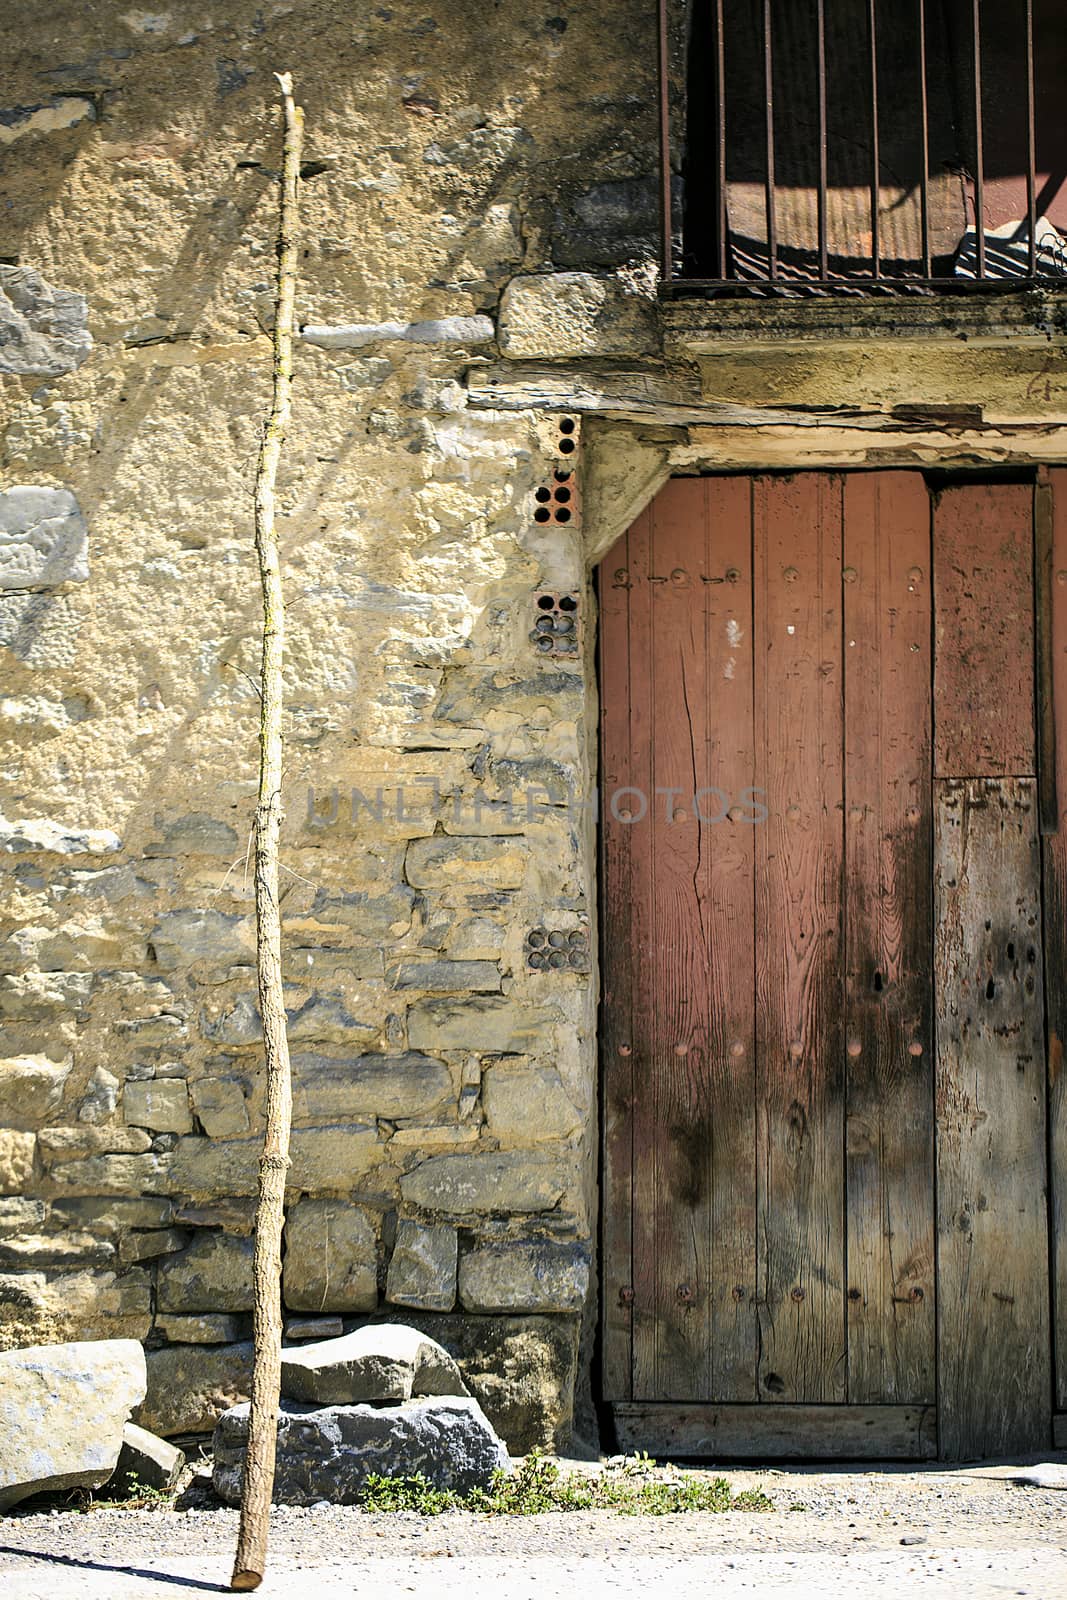 Vintage old wooden door in a Town of spain